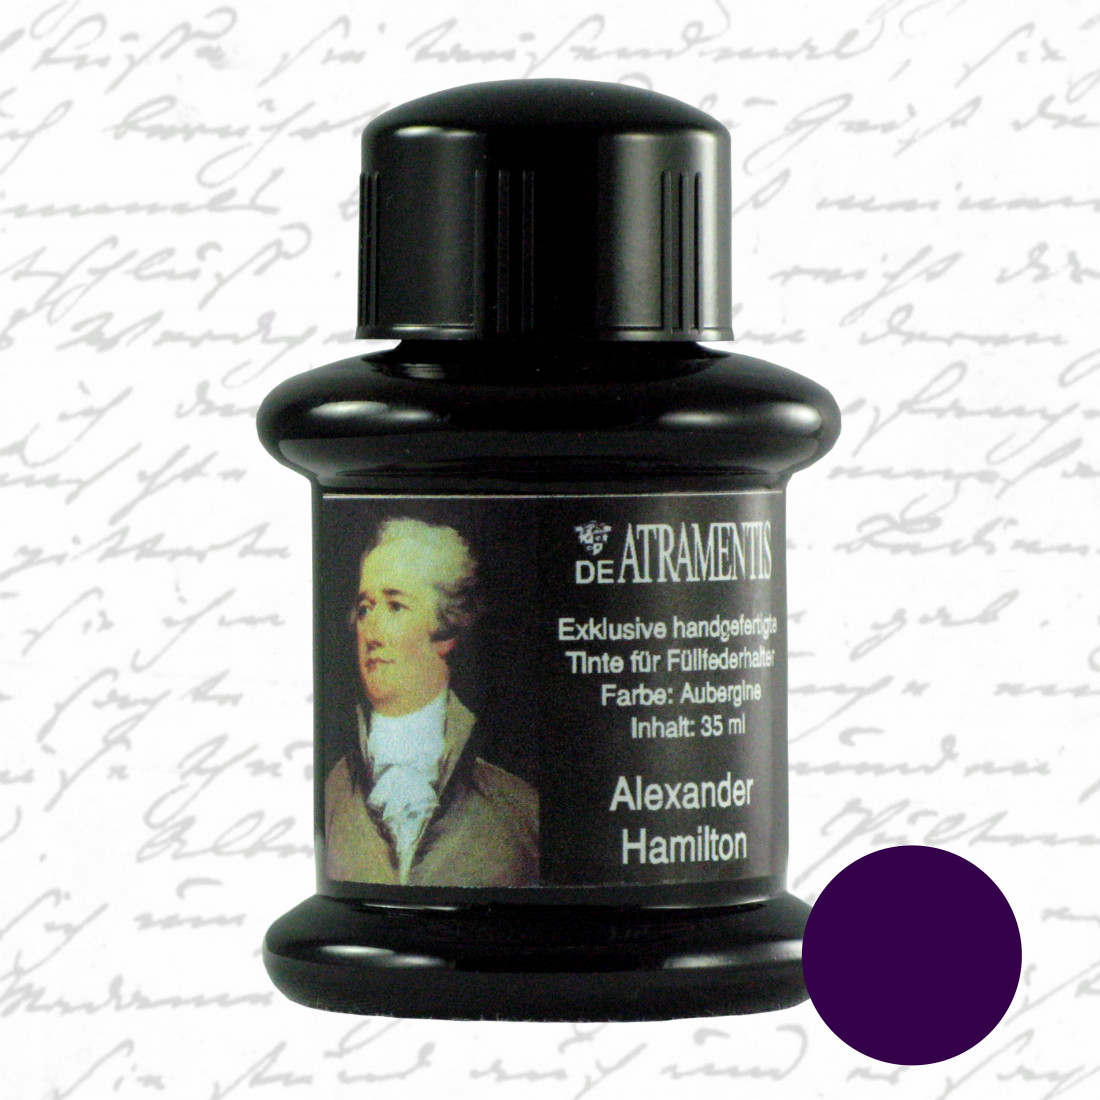 De Atramentis Alexander Hamilton 45ml fountain pen ink